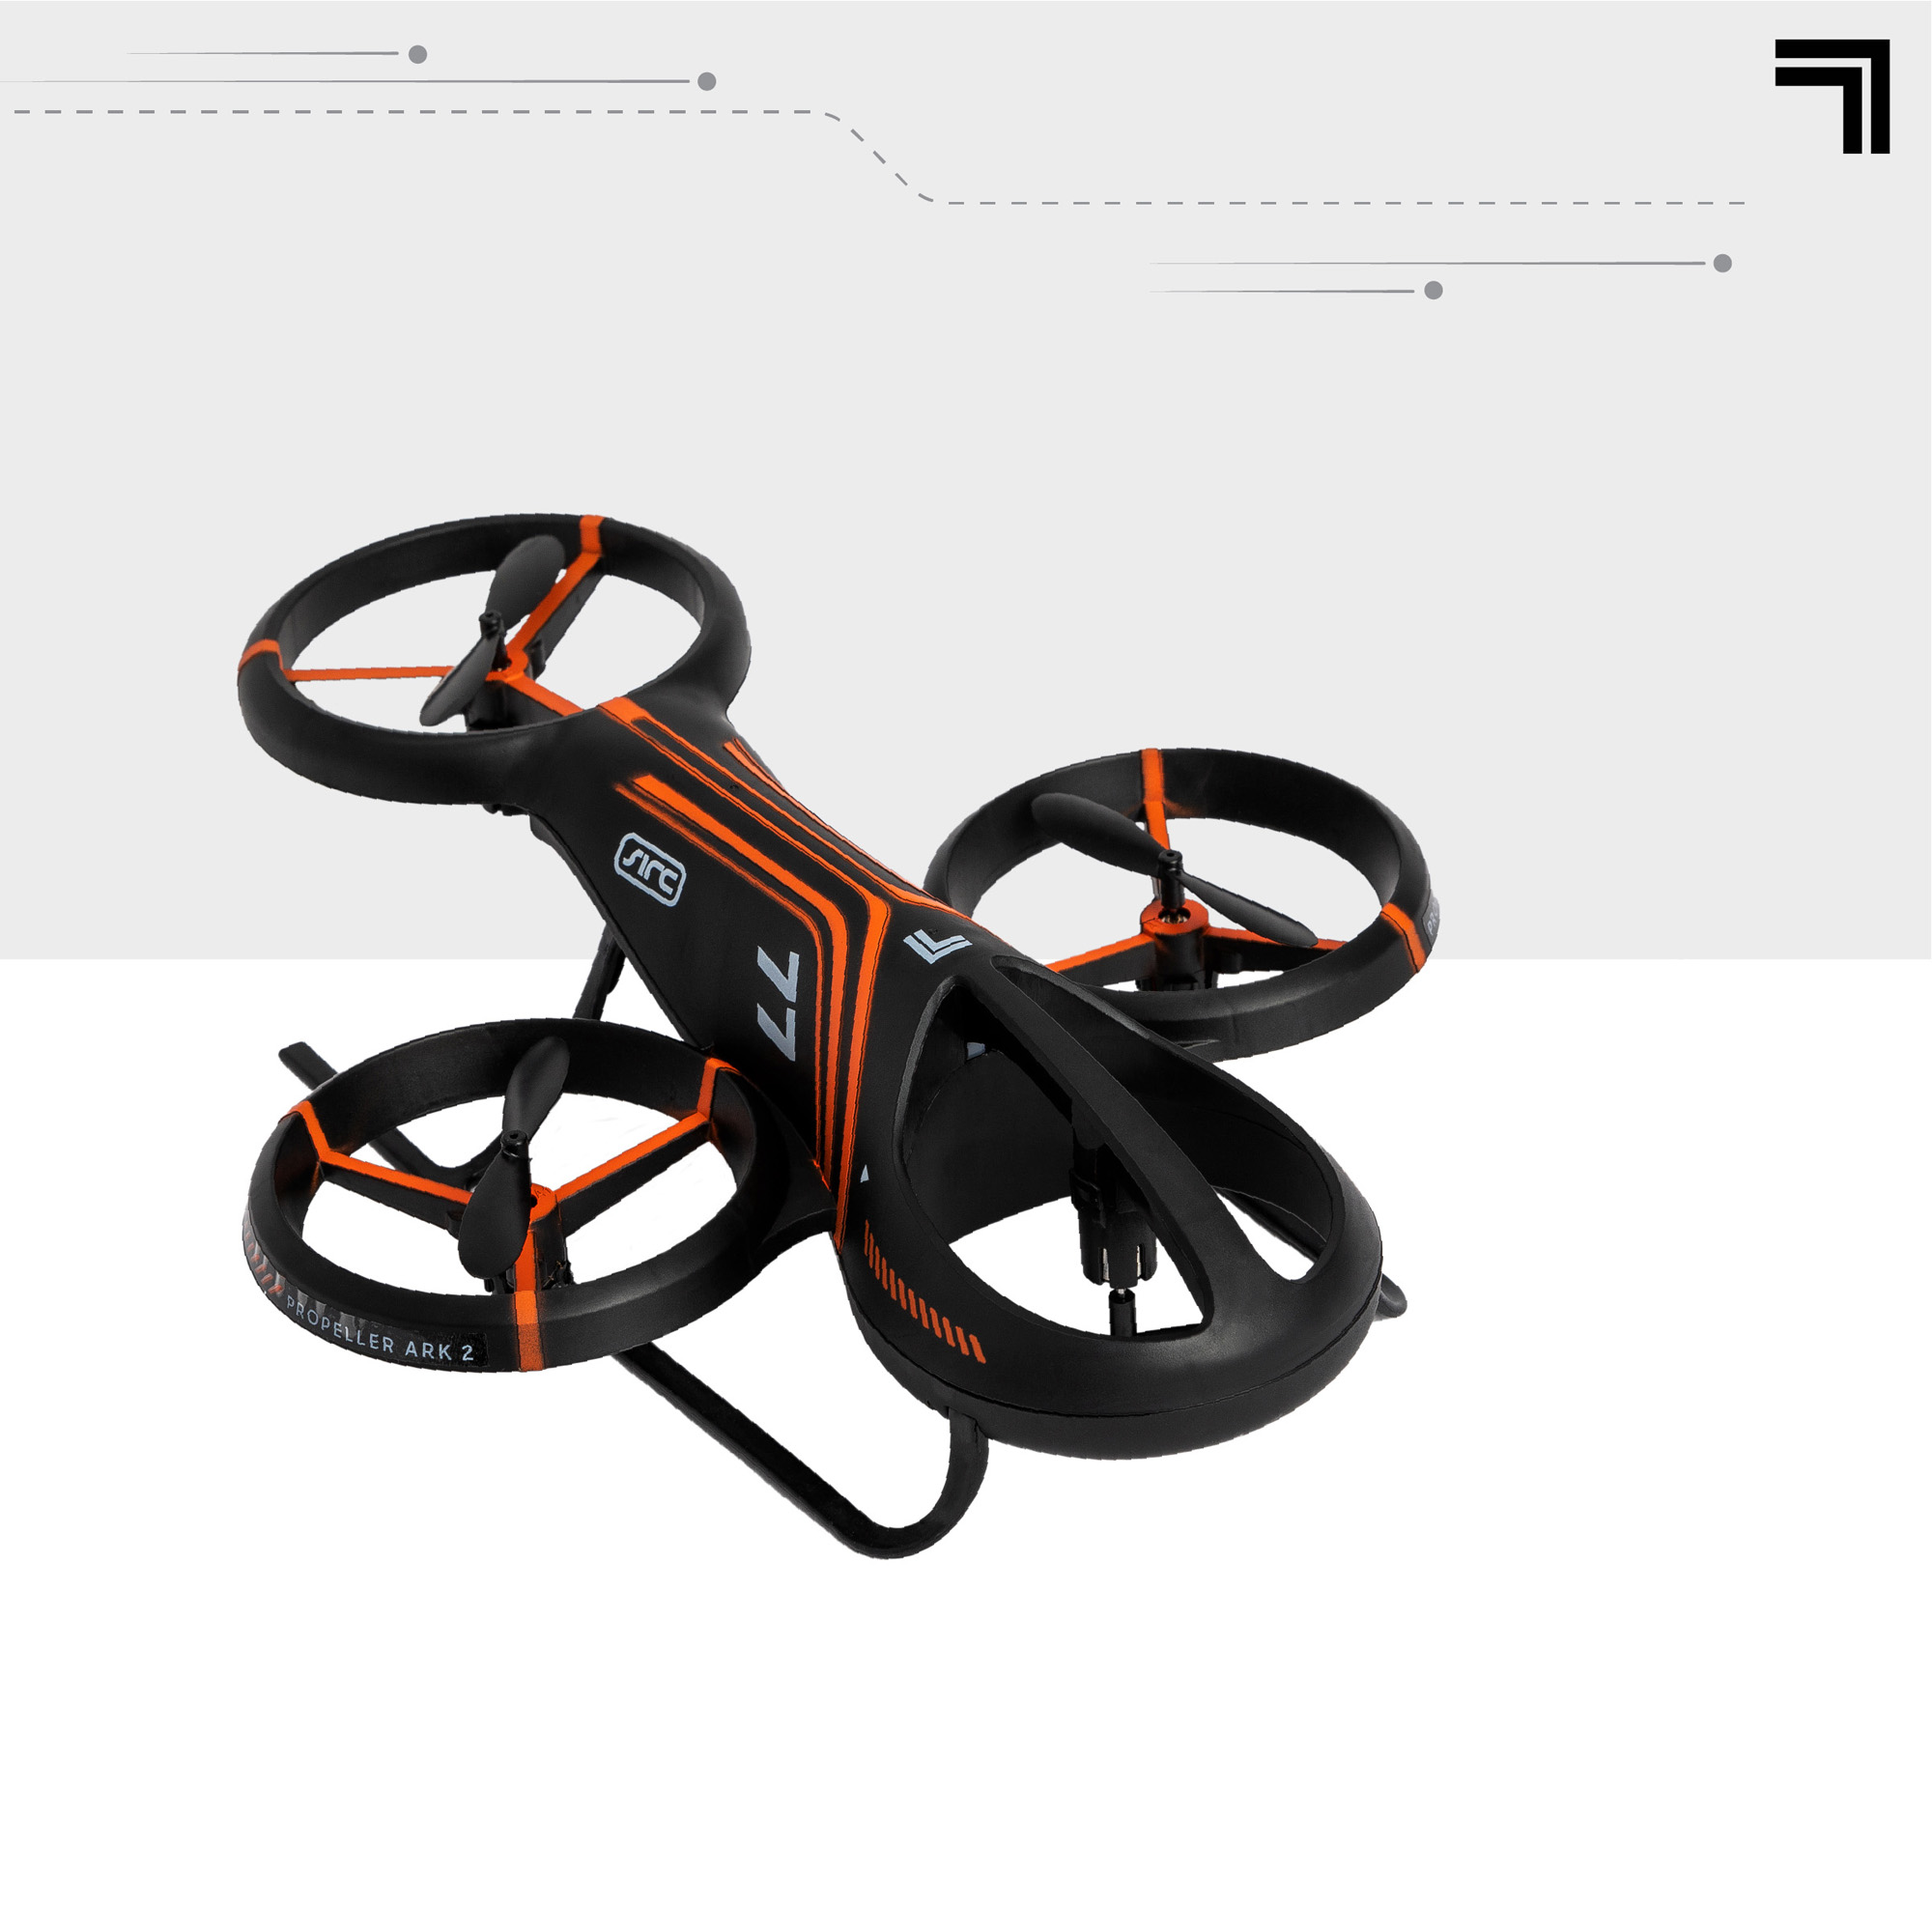 Sharper image - quadricottero radiocomandato aero drone - Sharper Image